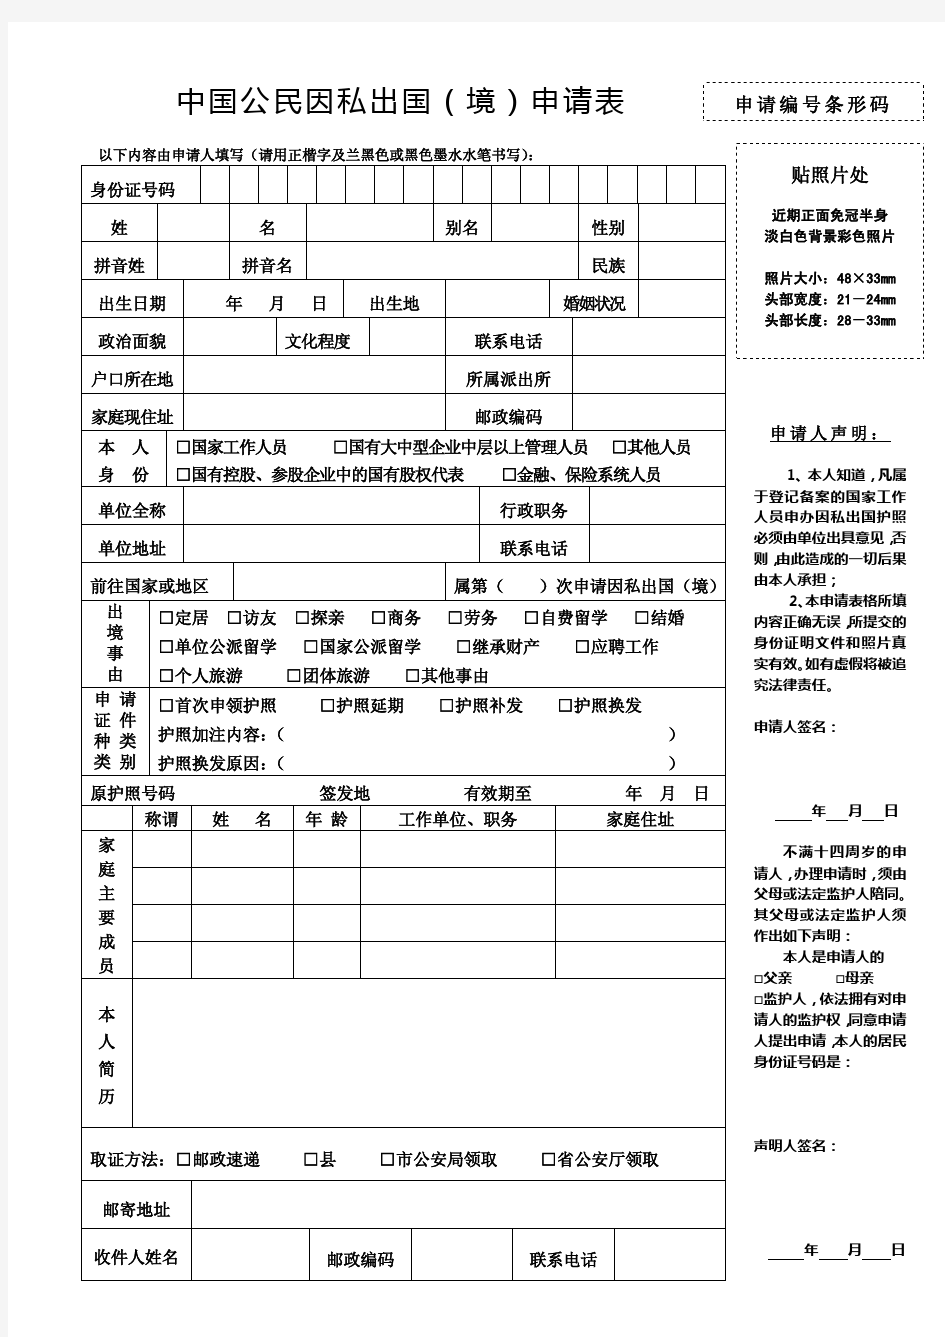 中国公民因私出国(境)申请表